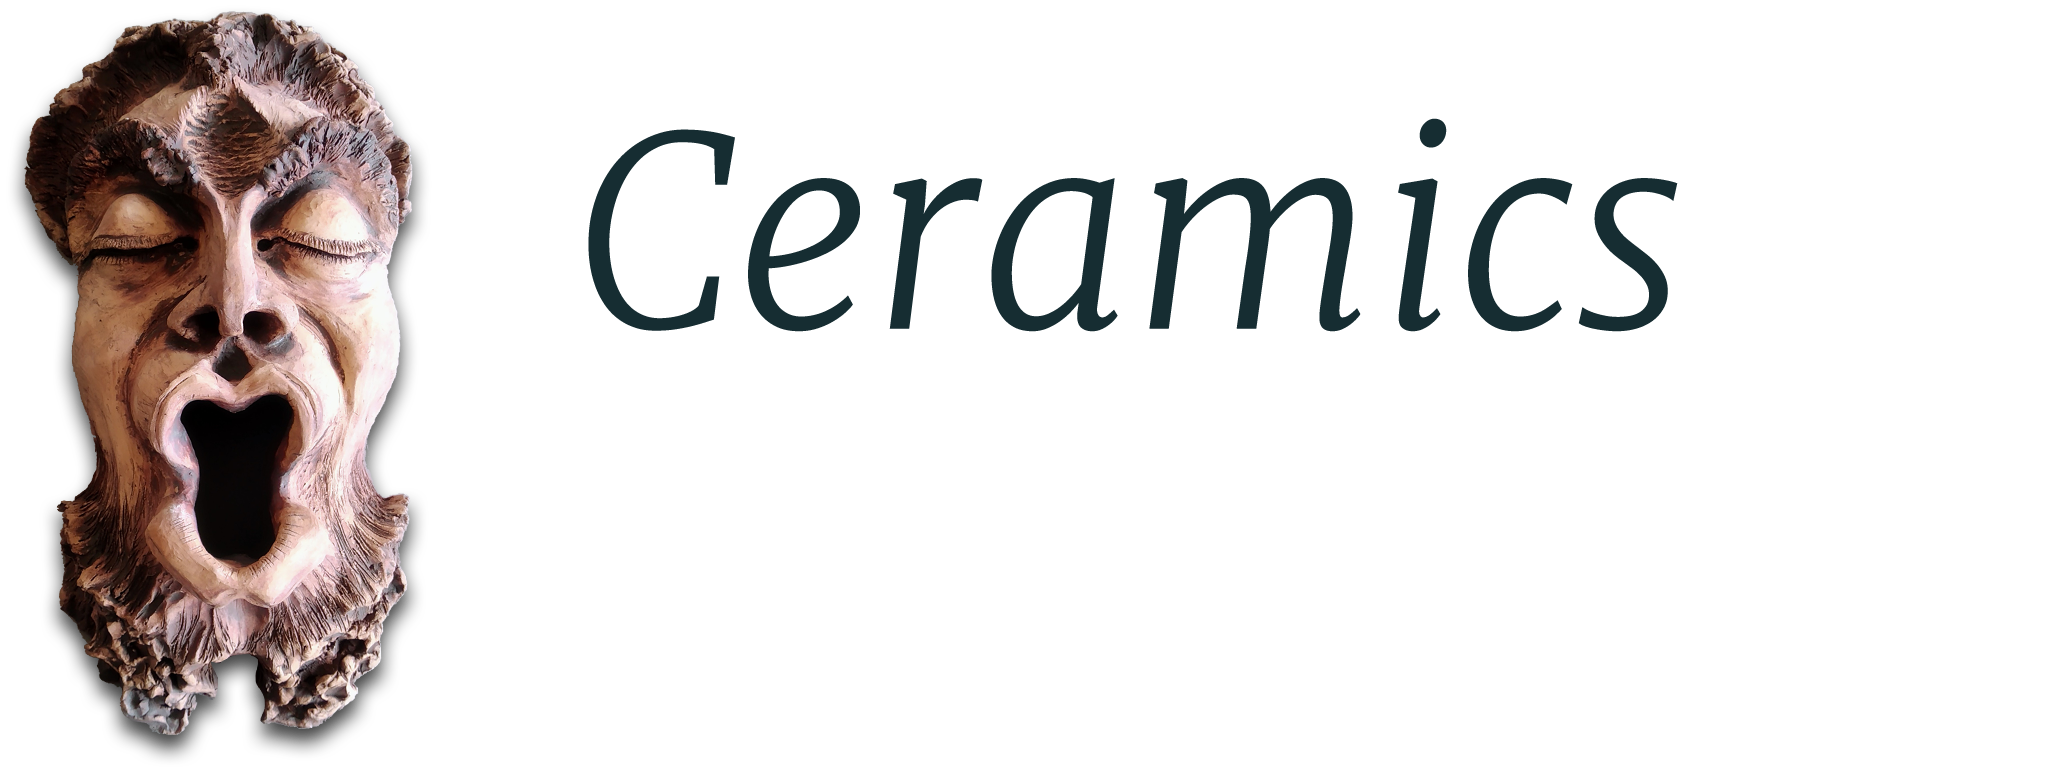 Ceramics Inspirations Ltd.